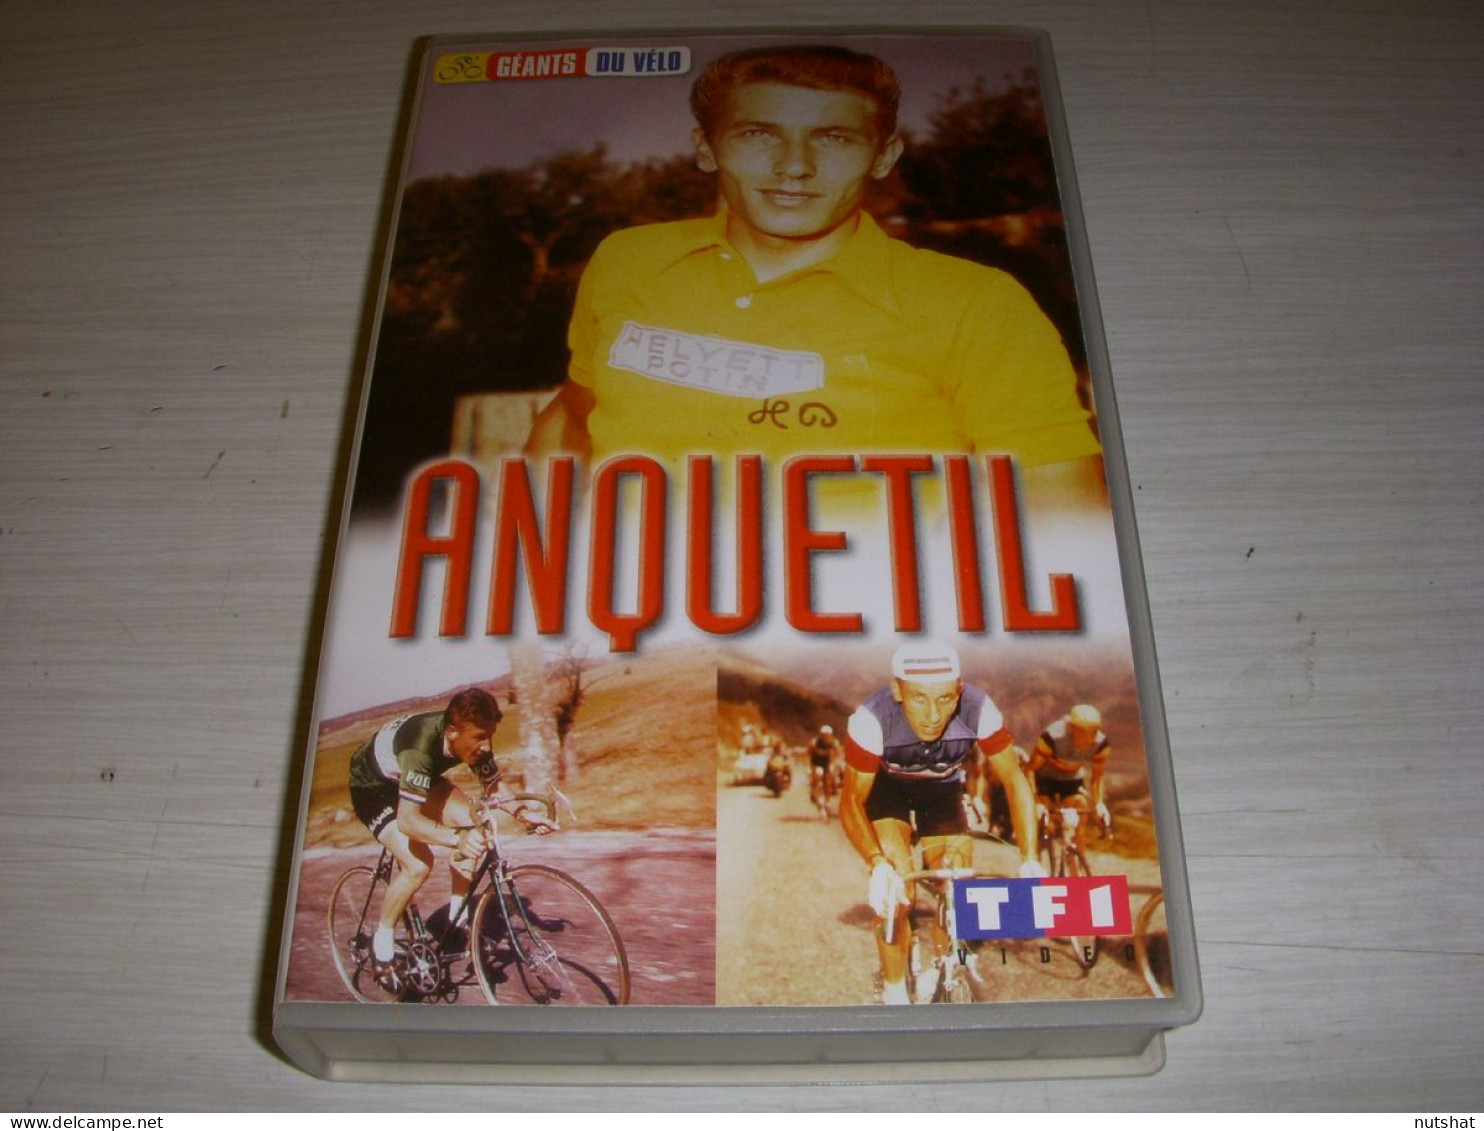 CYCLISME CASSETTE VHS Les GEANTS Du VELO Jacques ANQUETIL 75mn - Sports